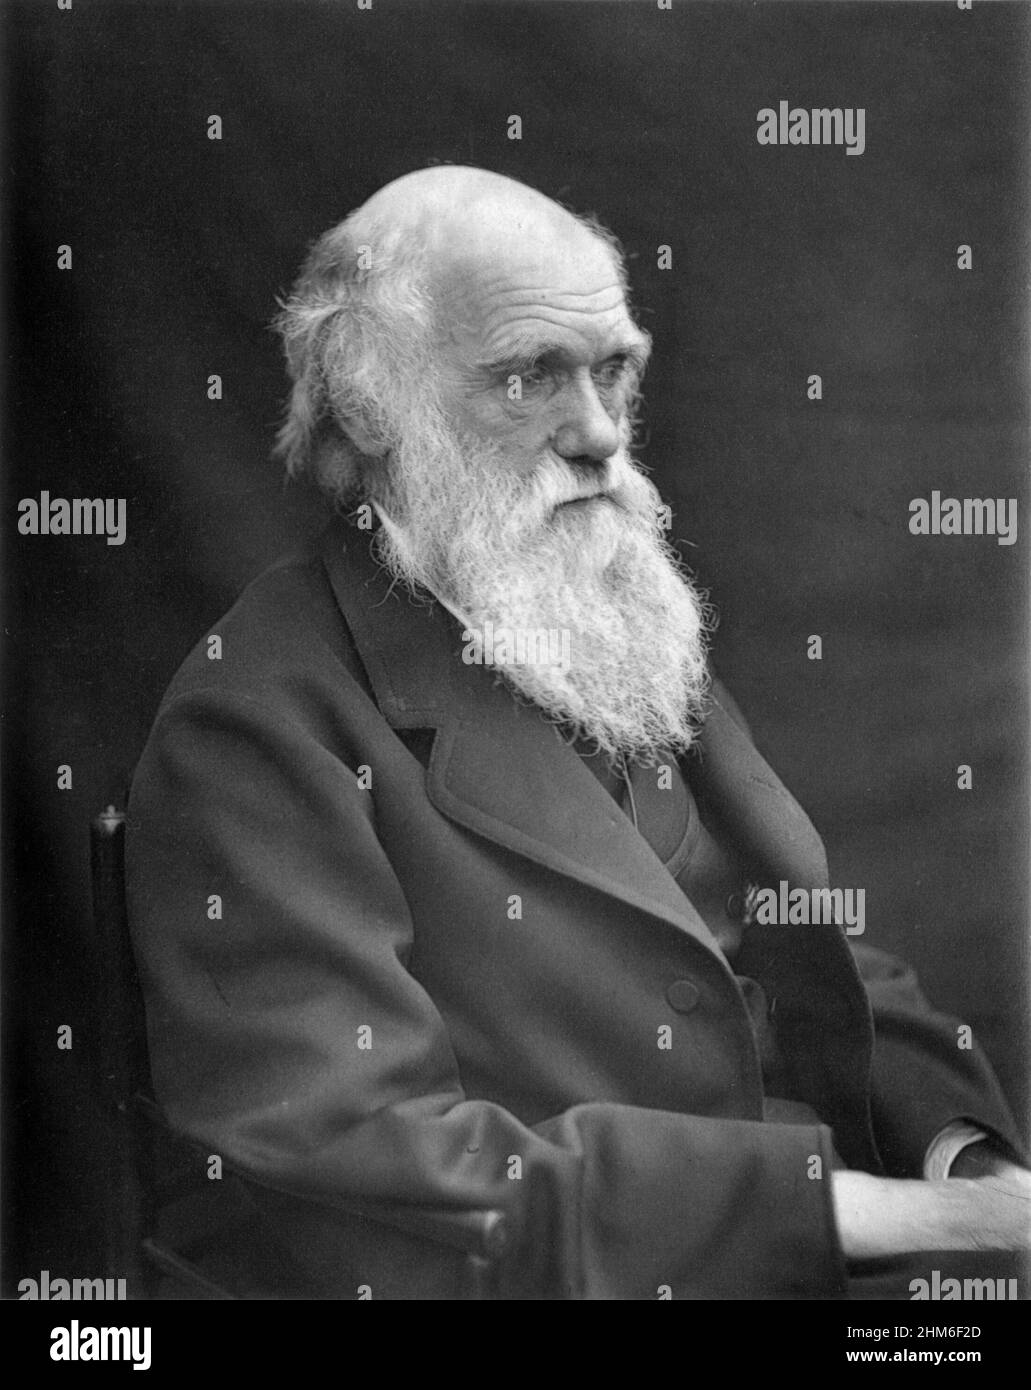 Ritratto dello scrittore inglese e fondatore della teoria della selezione baturale, Charles Darwin dal 1878 quando aveva 69 anni. Foto Stock